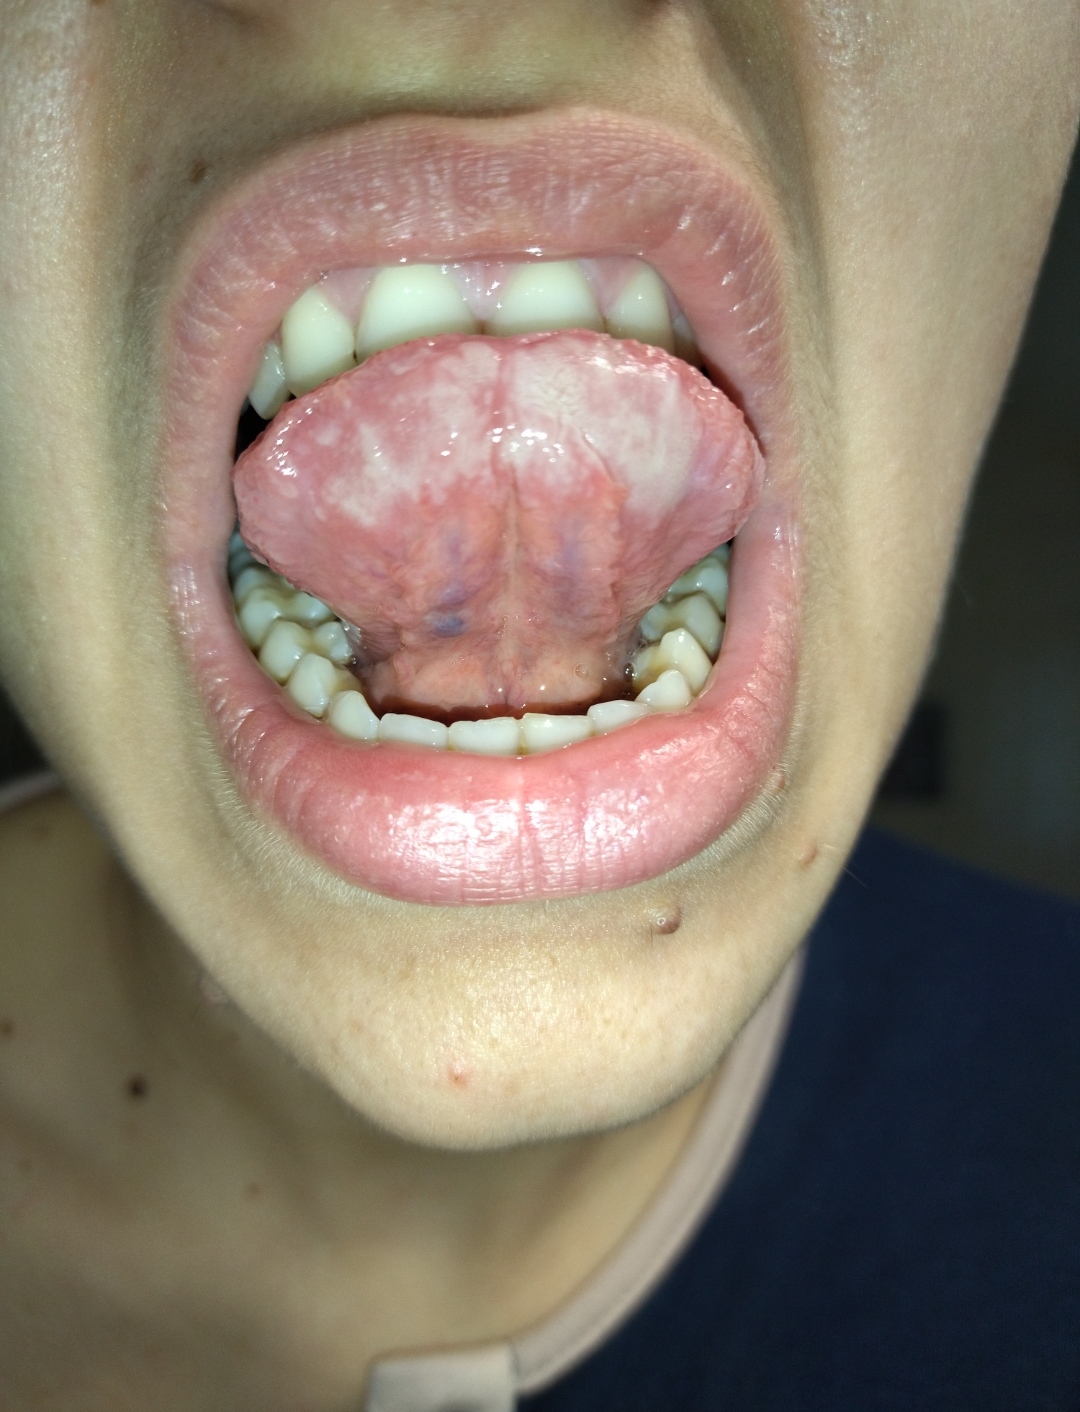 Da ormai 12 anni ho una macchia bianca sotto la lingua